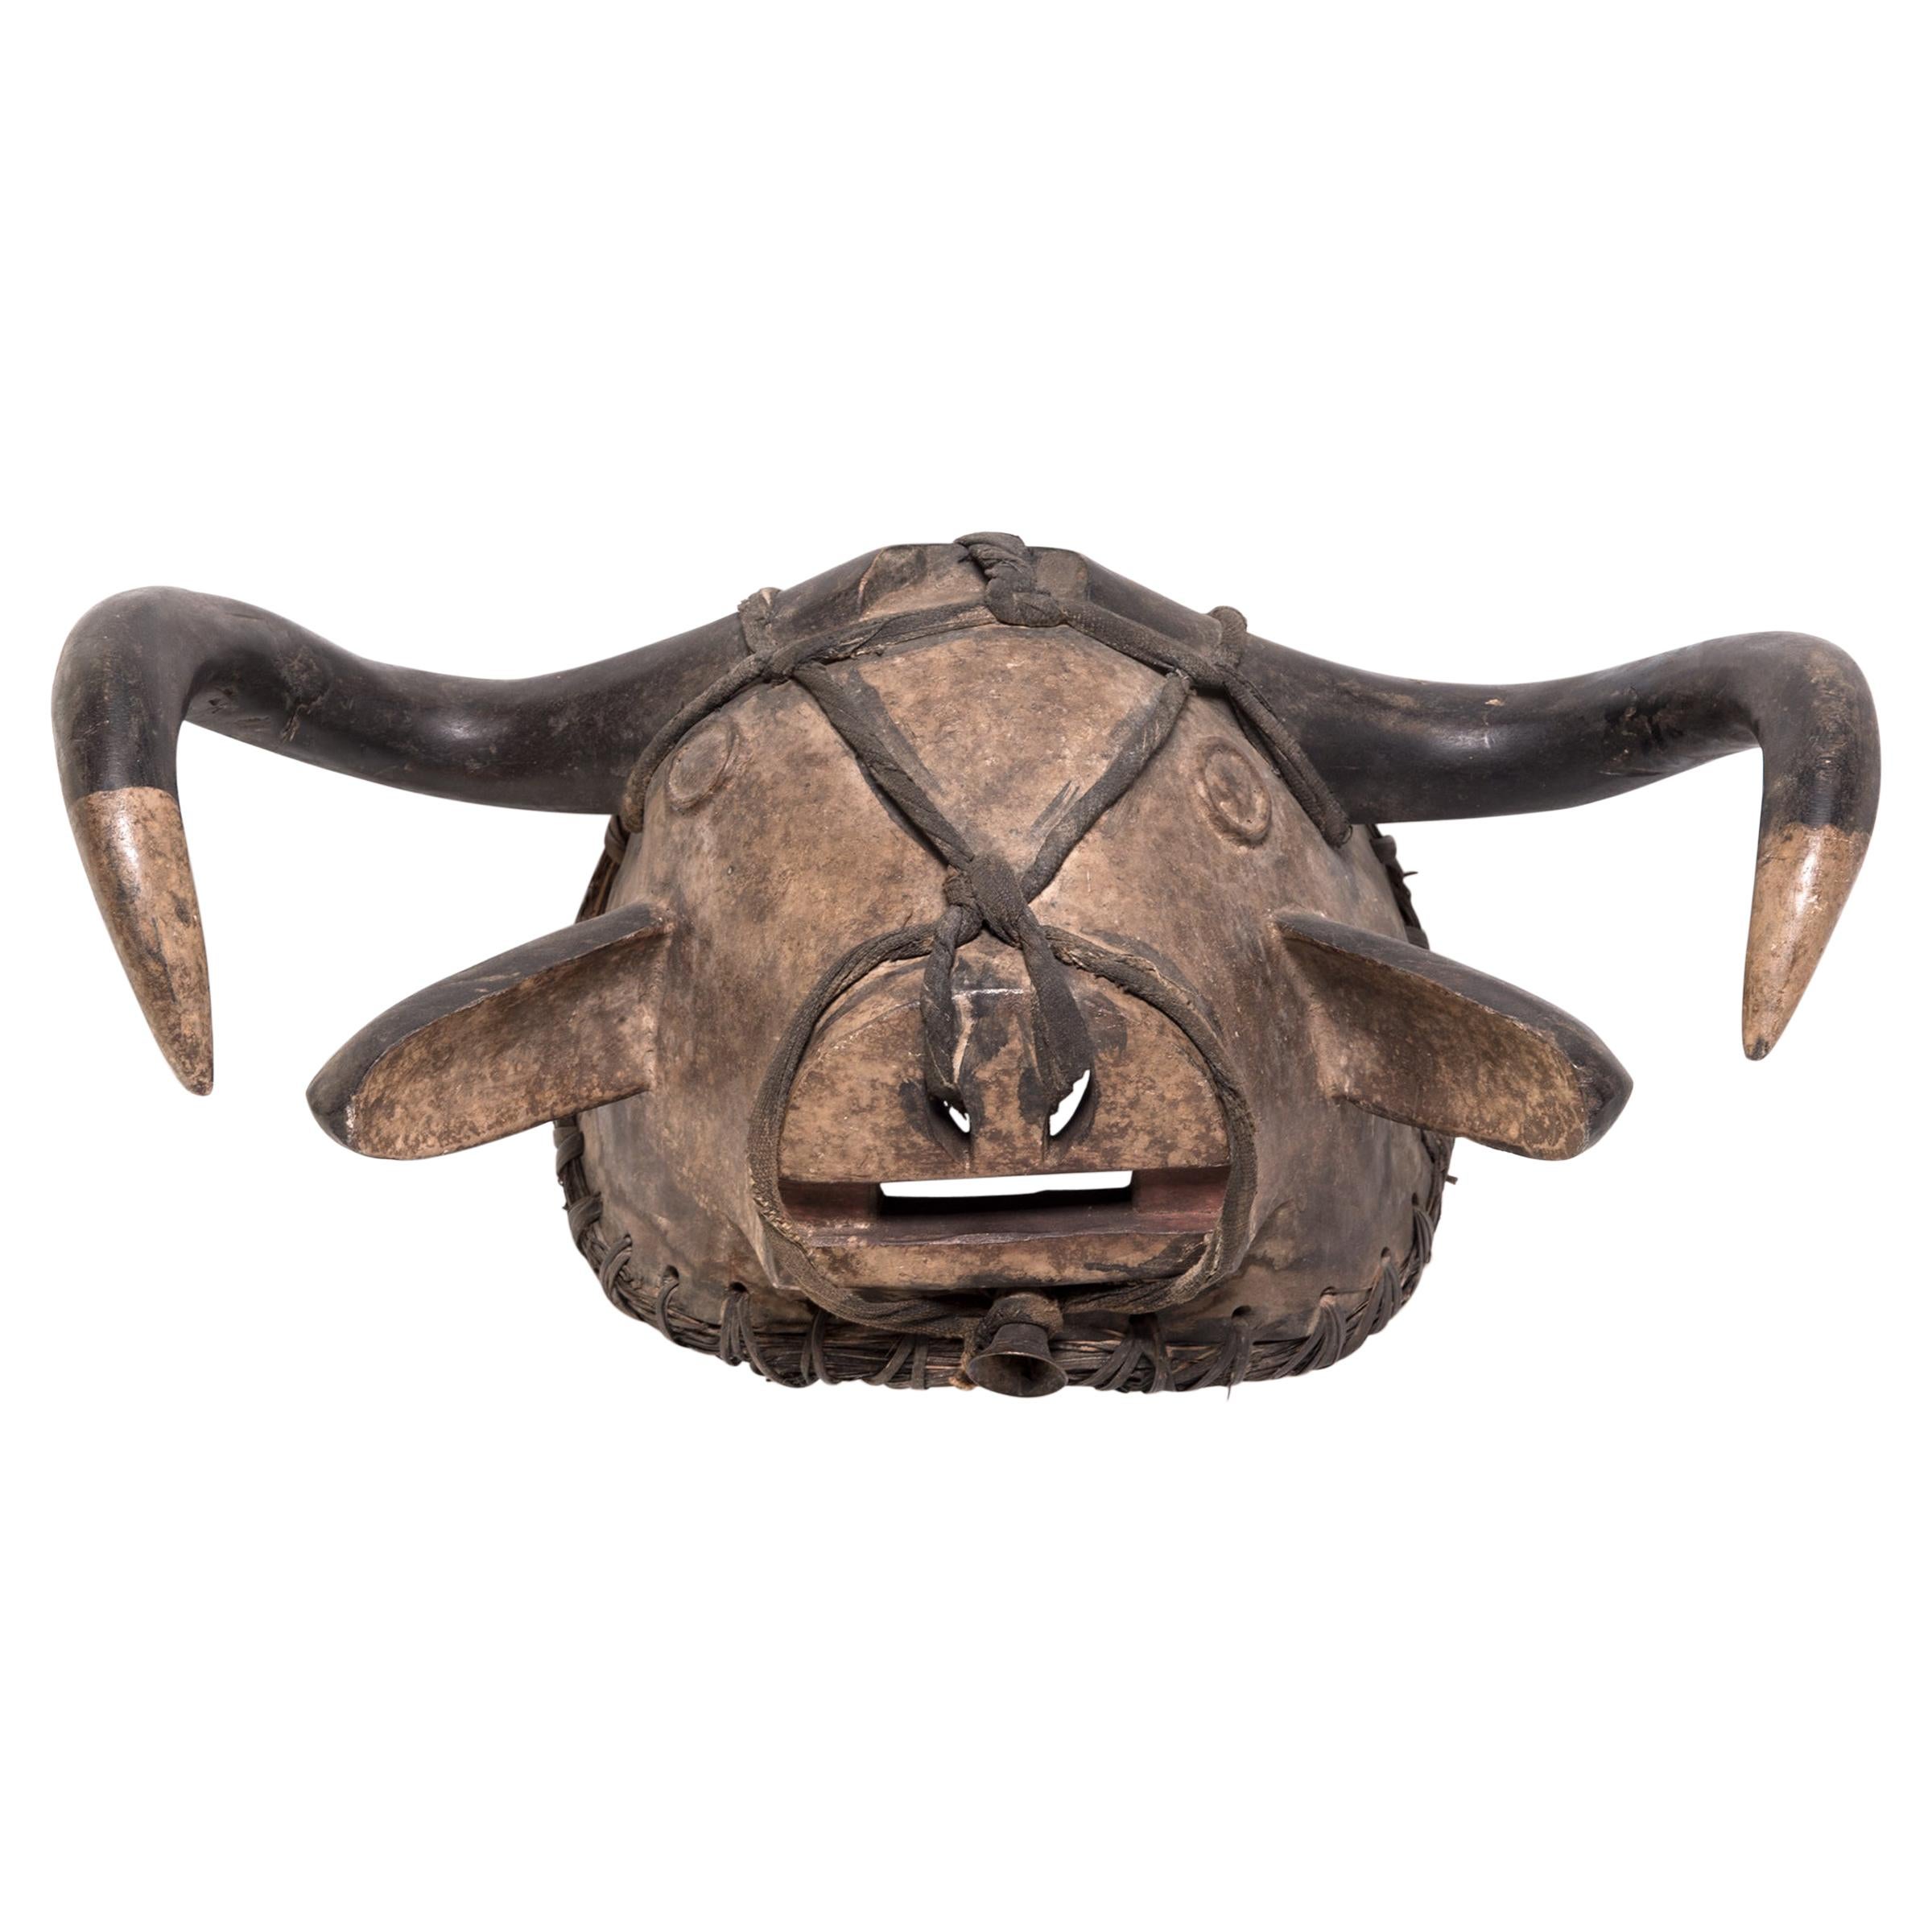 Bidjogo Tribal Initiation Ox Mask, c. 1900